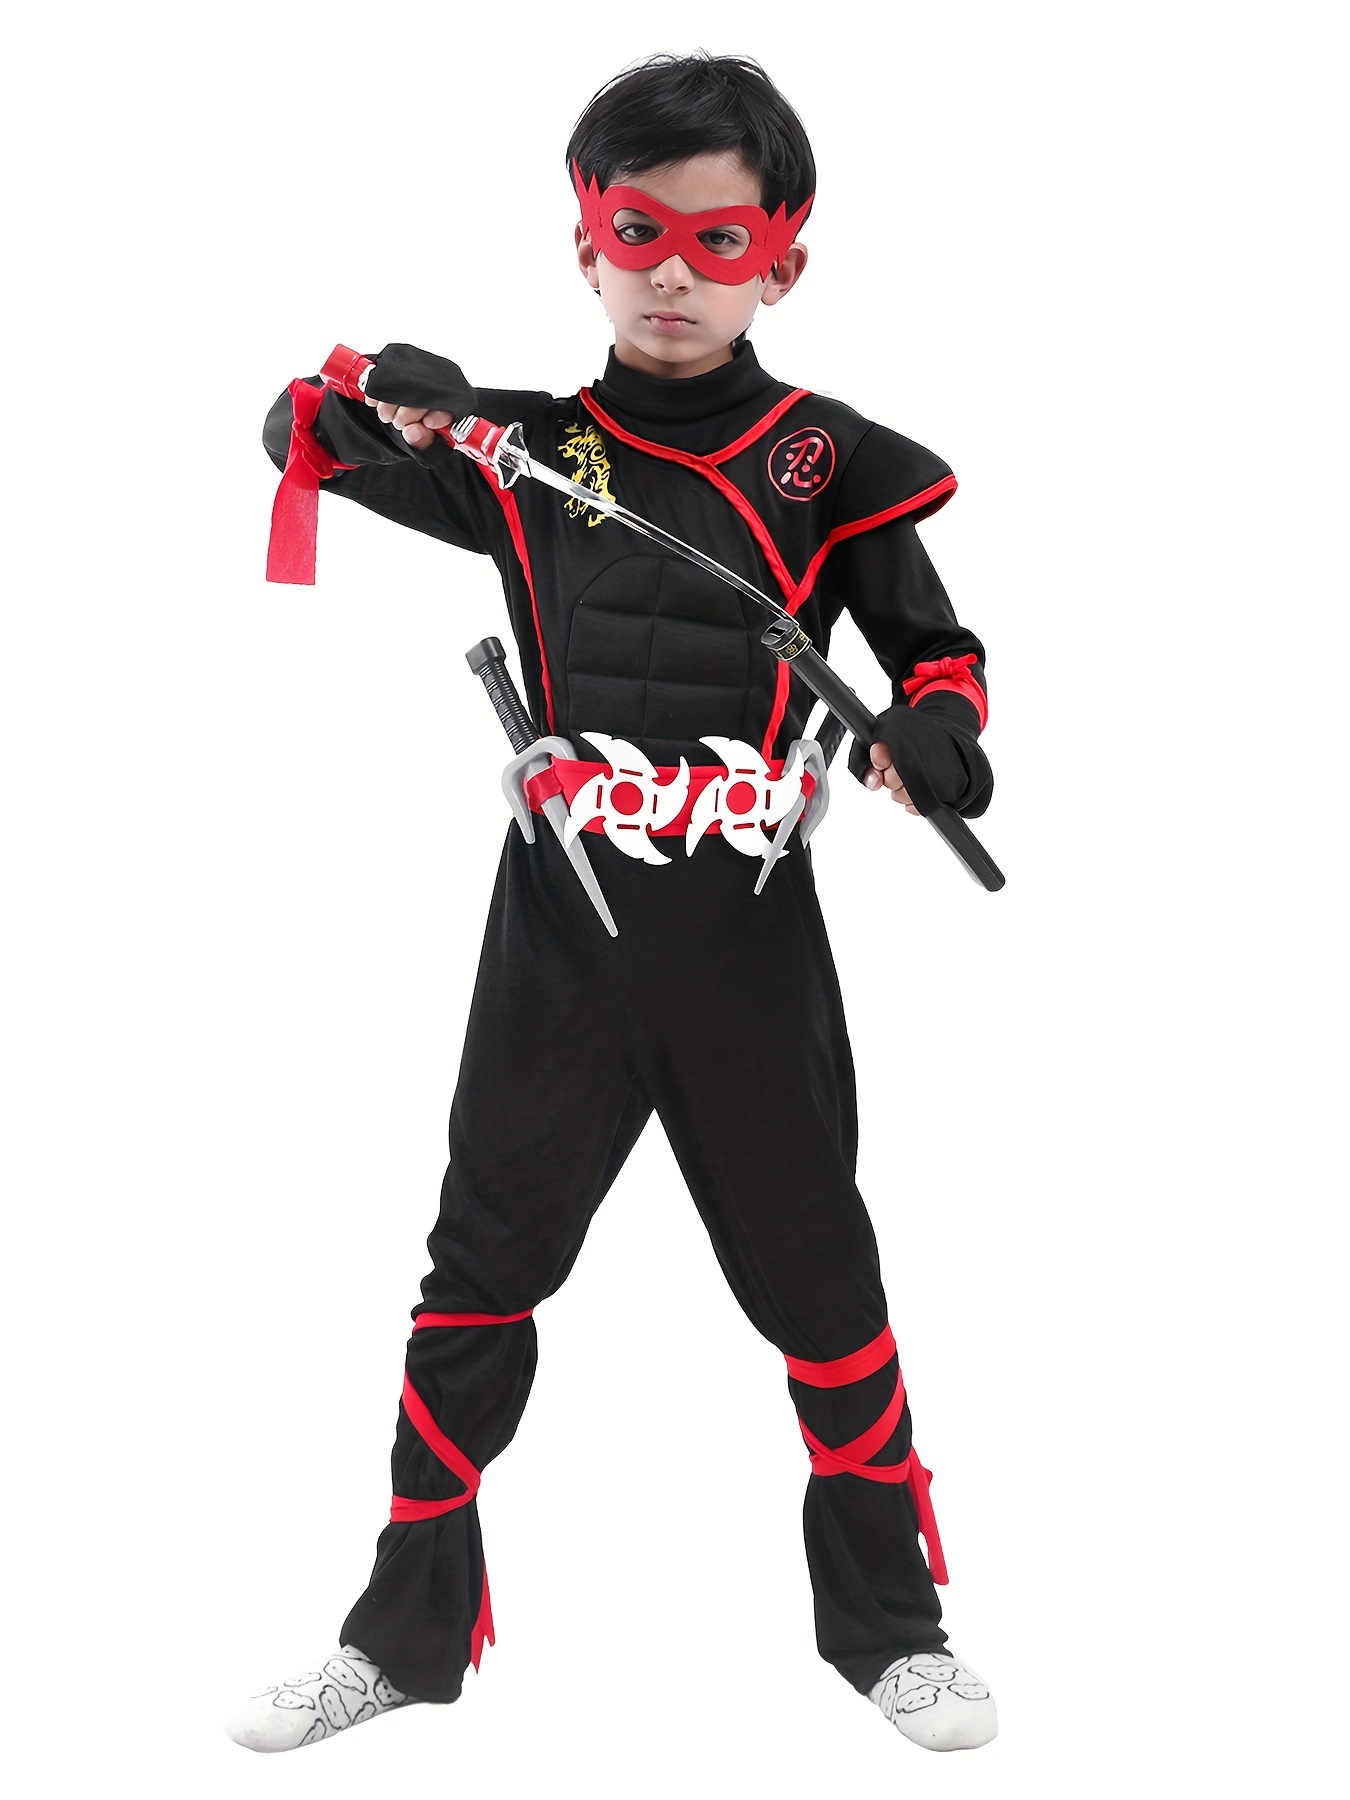 Boy's Special Ops Ninja Costume